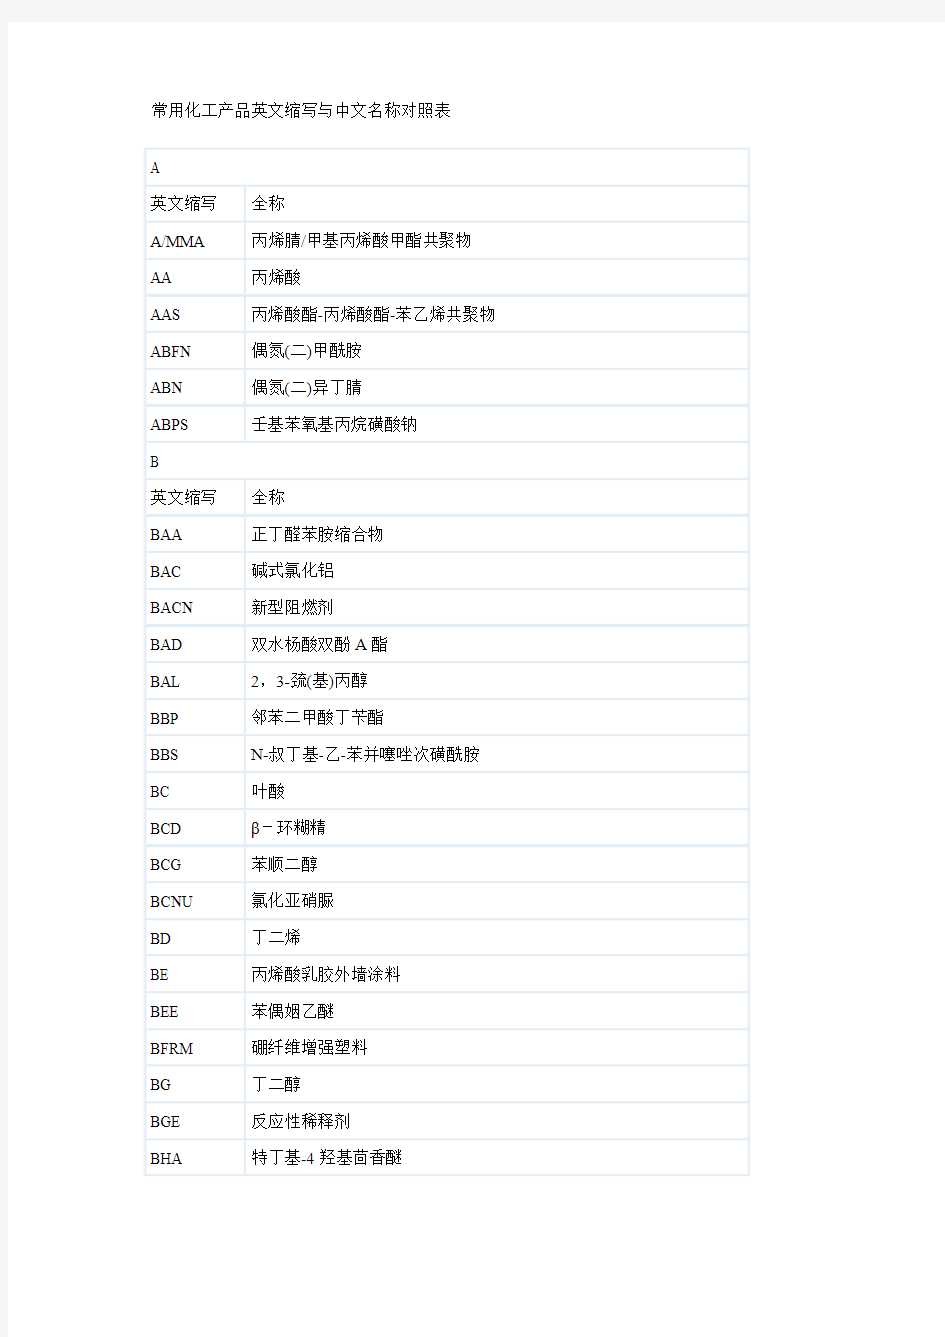 常用化工产品英文缩写与中文名称对照表